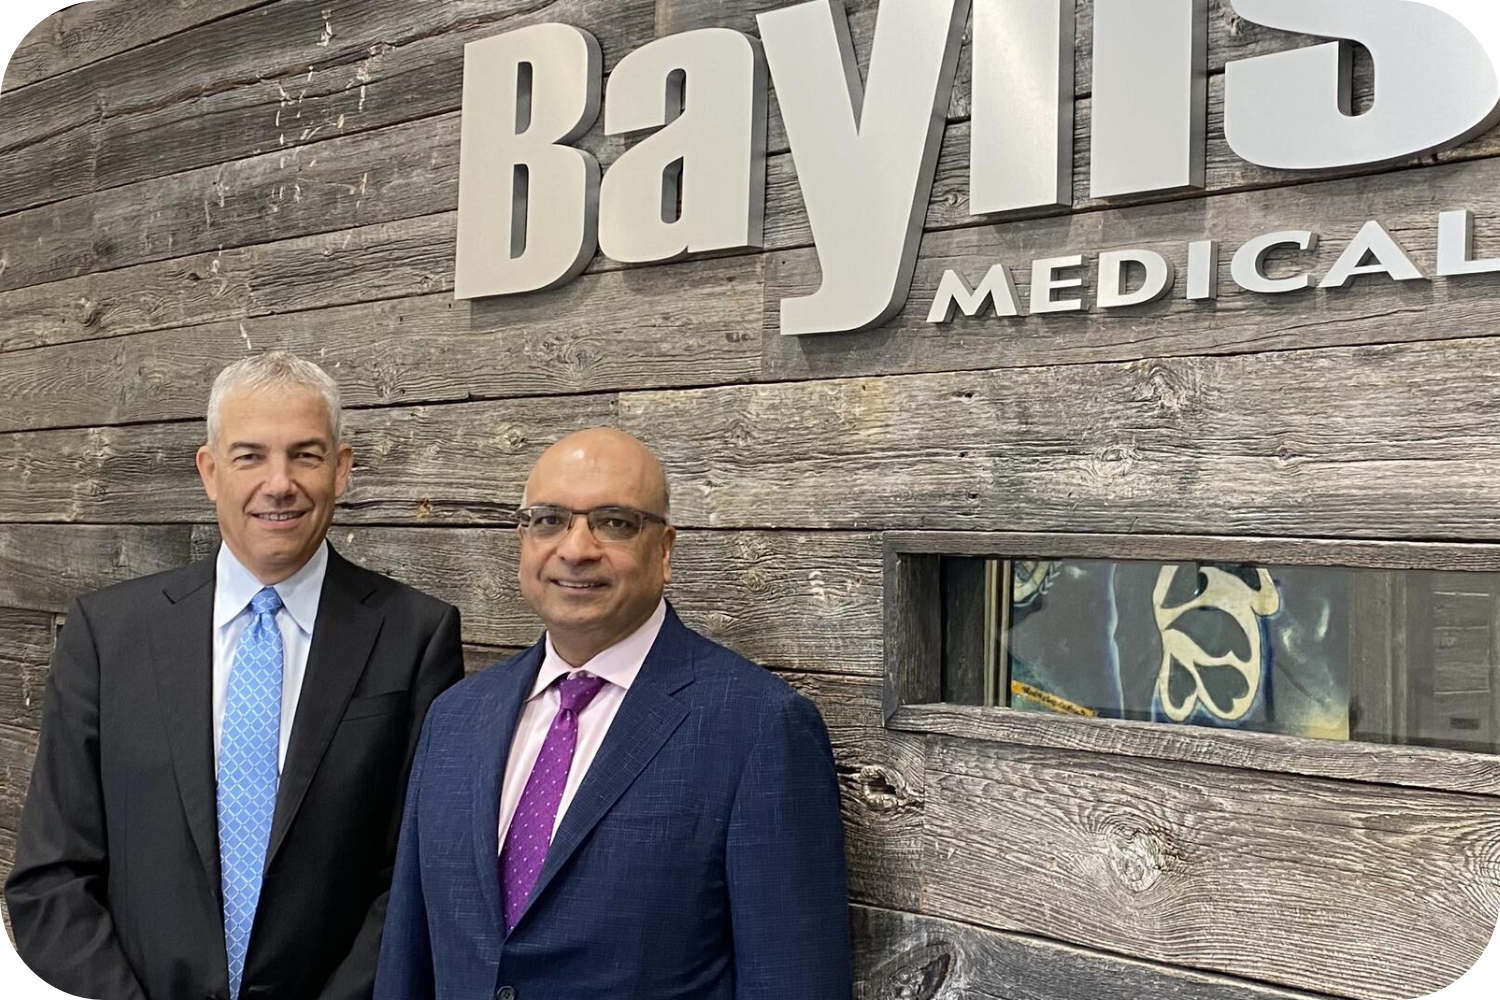 Kris Shah and Frank Baylis posing in front of Baylis Medical Logo